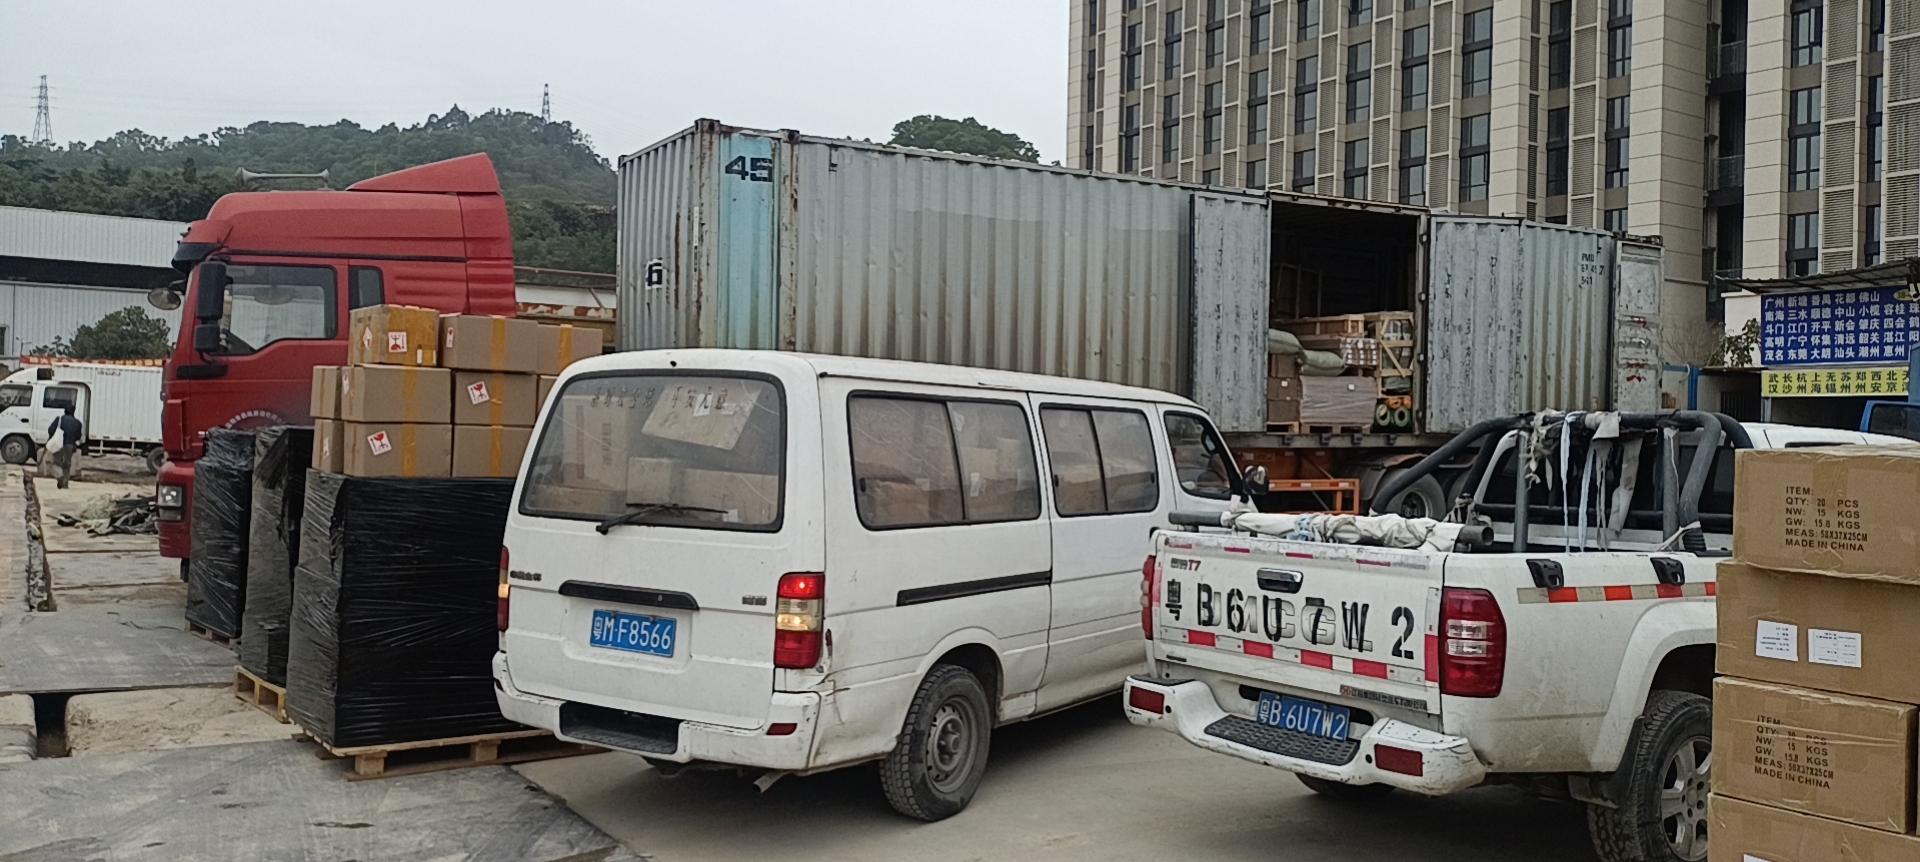 上海奉贤区到丽水整车货运  大件物流运输 仓储服务价格电话  上海发丽水货运公司图片